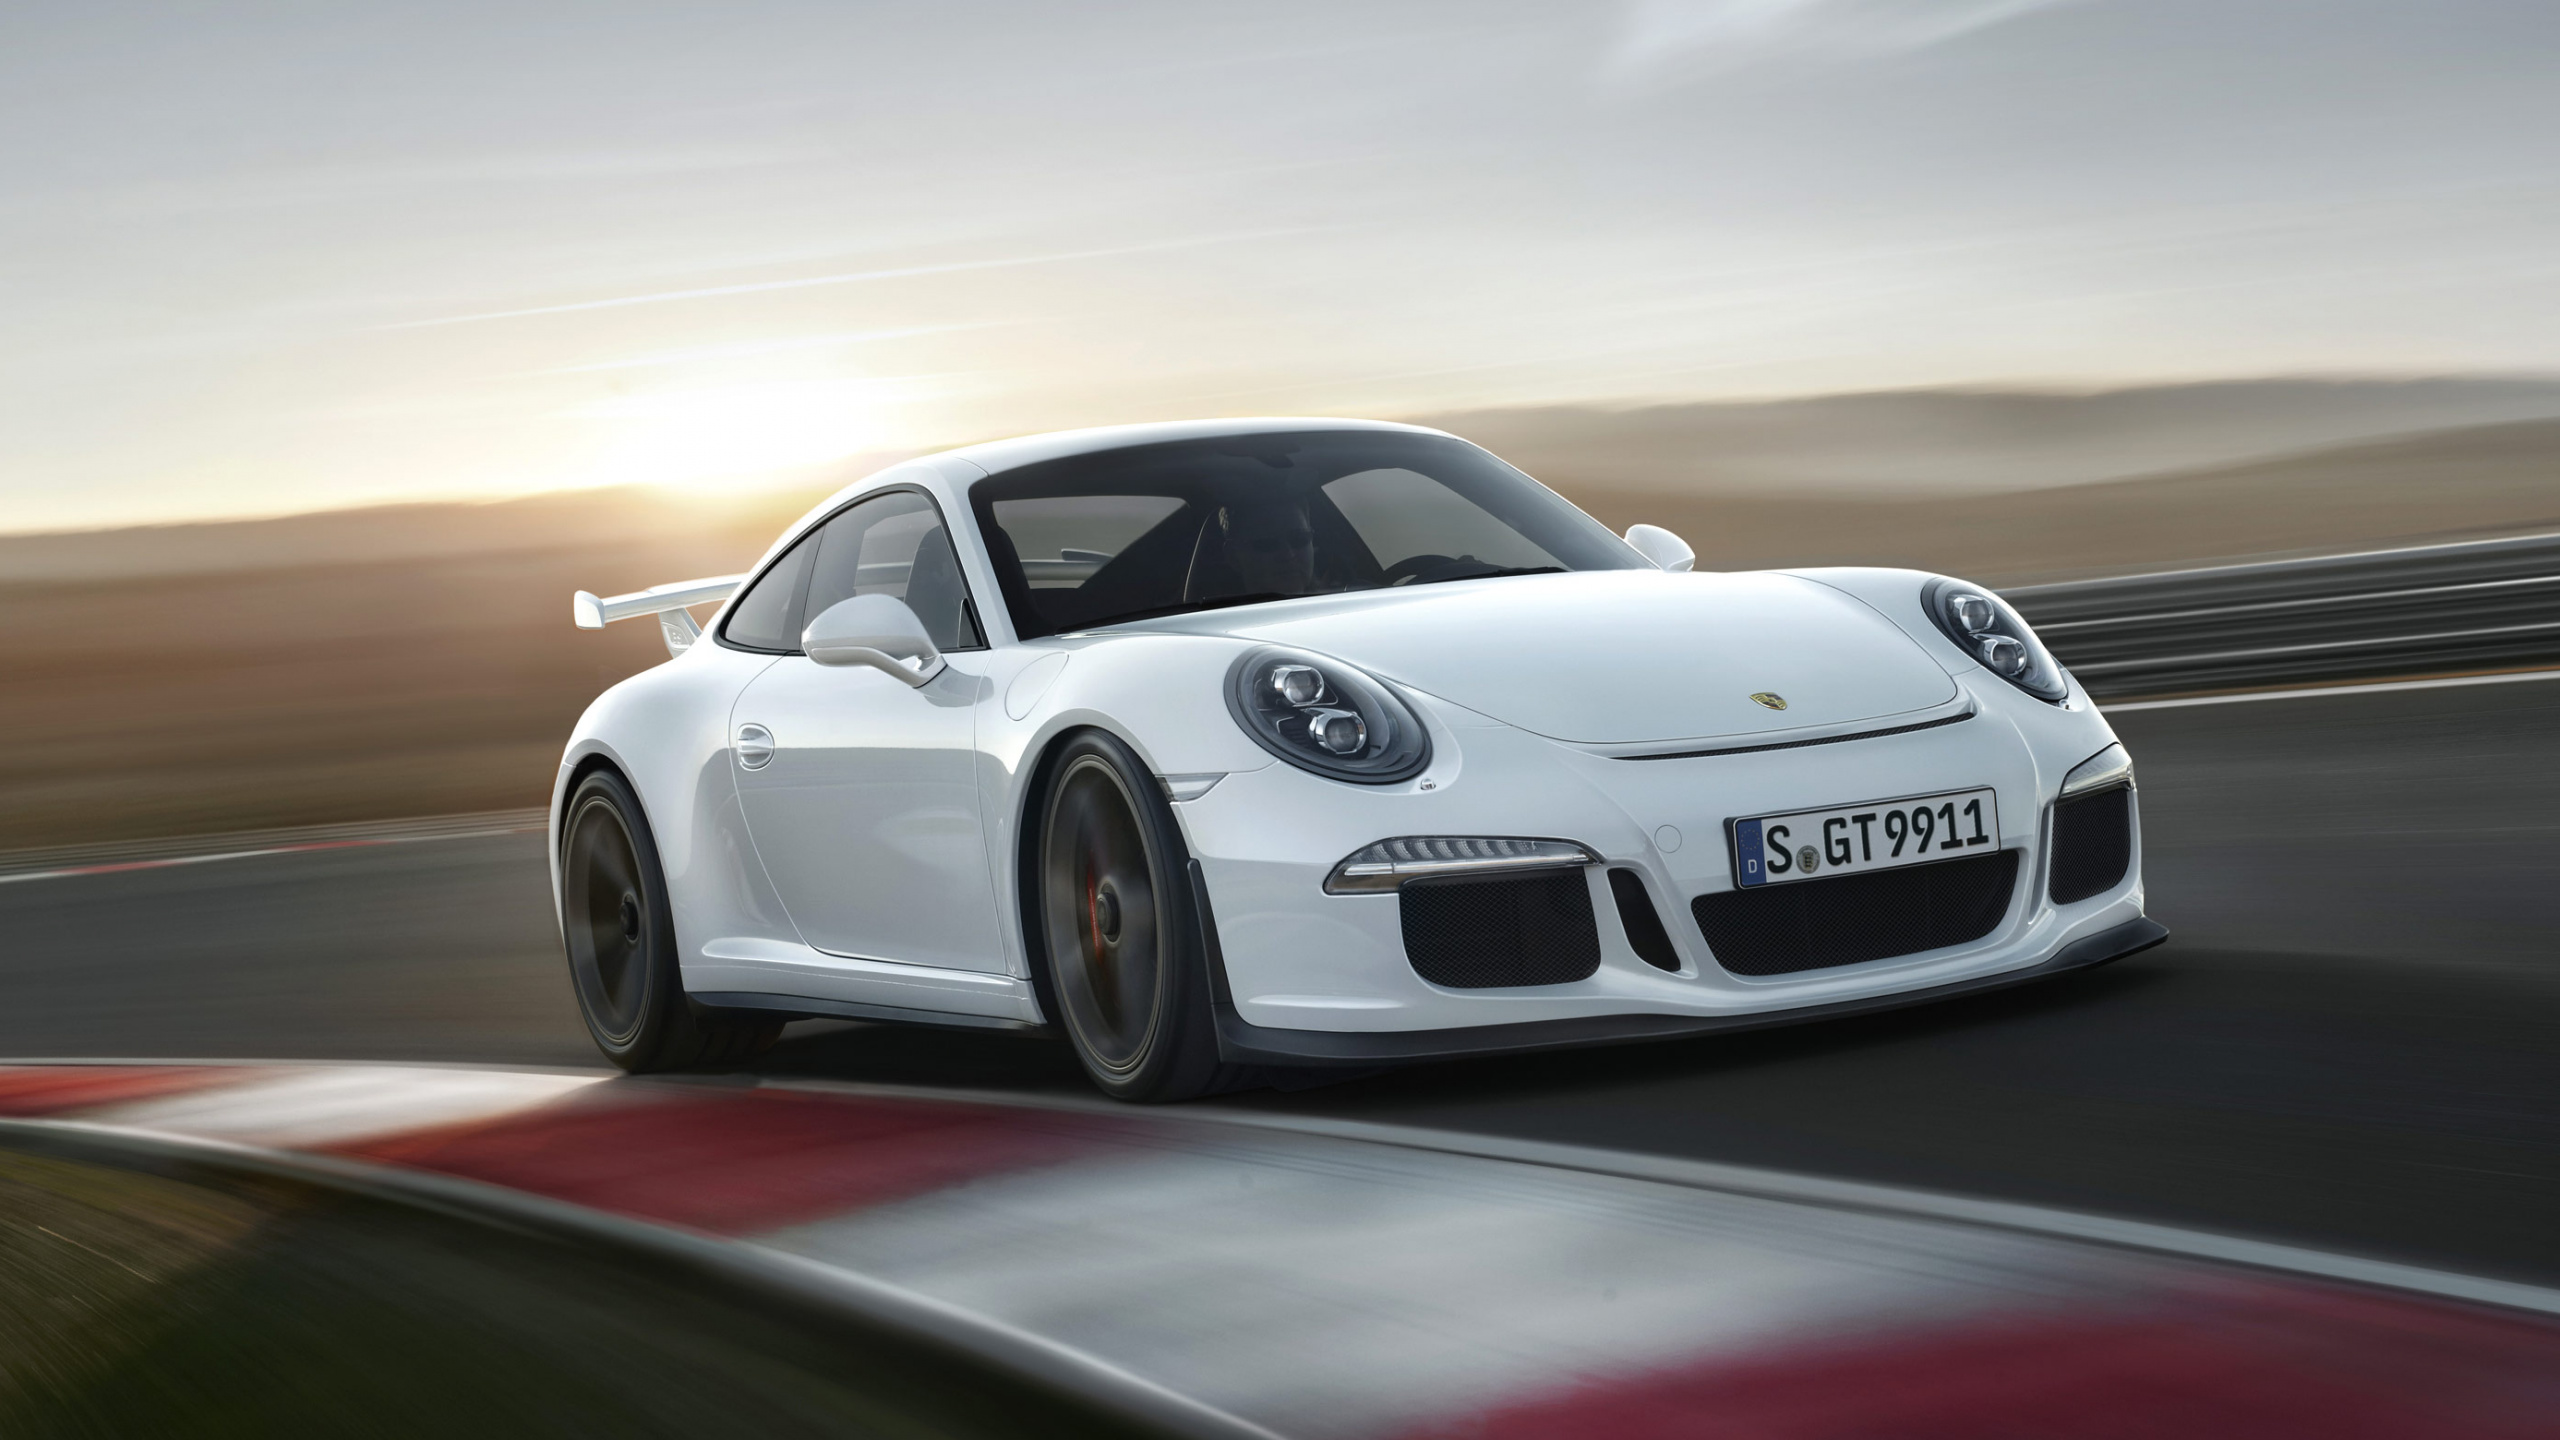 Porsche 911 Blanche Sur Route. Wallpaper in 2560x1440 Resolution